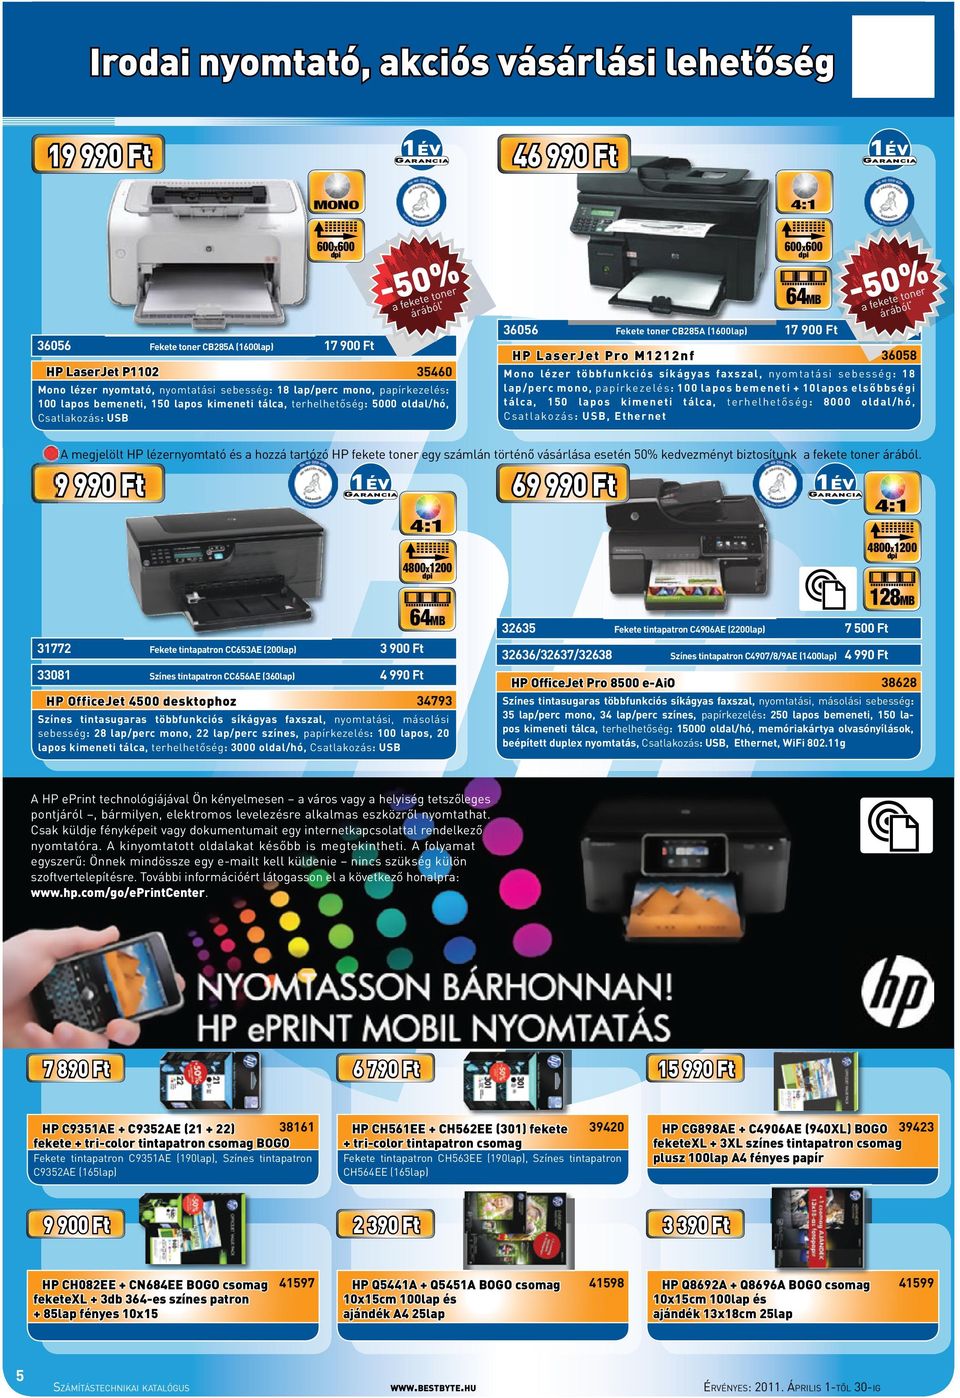 Ft HP LaserJet Pro M1212nf 600x600 64MB -50% a fekete toner árából * 36058 Mono lézer többfunkciós síkágyas faxszal, nyomtatási sebesség: 18 lap/perc mono, papírkezelés: 100 lapos bemeneti + 10lapos